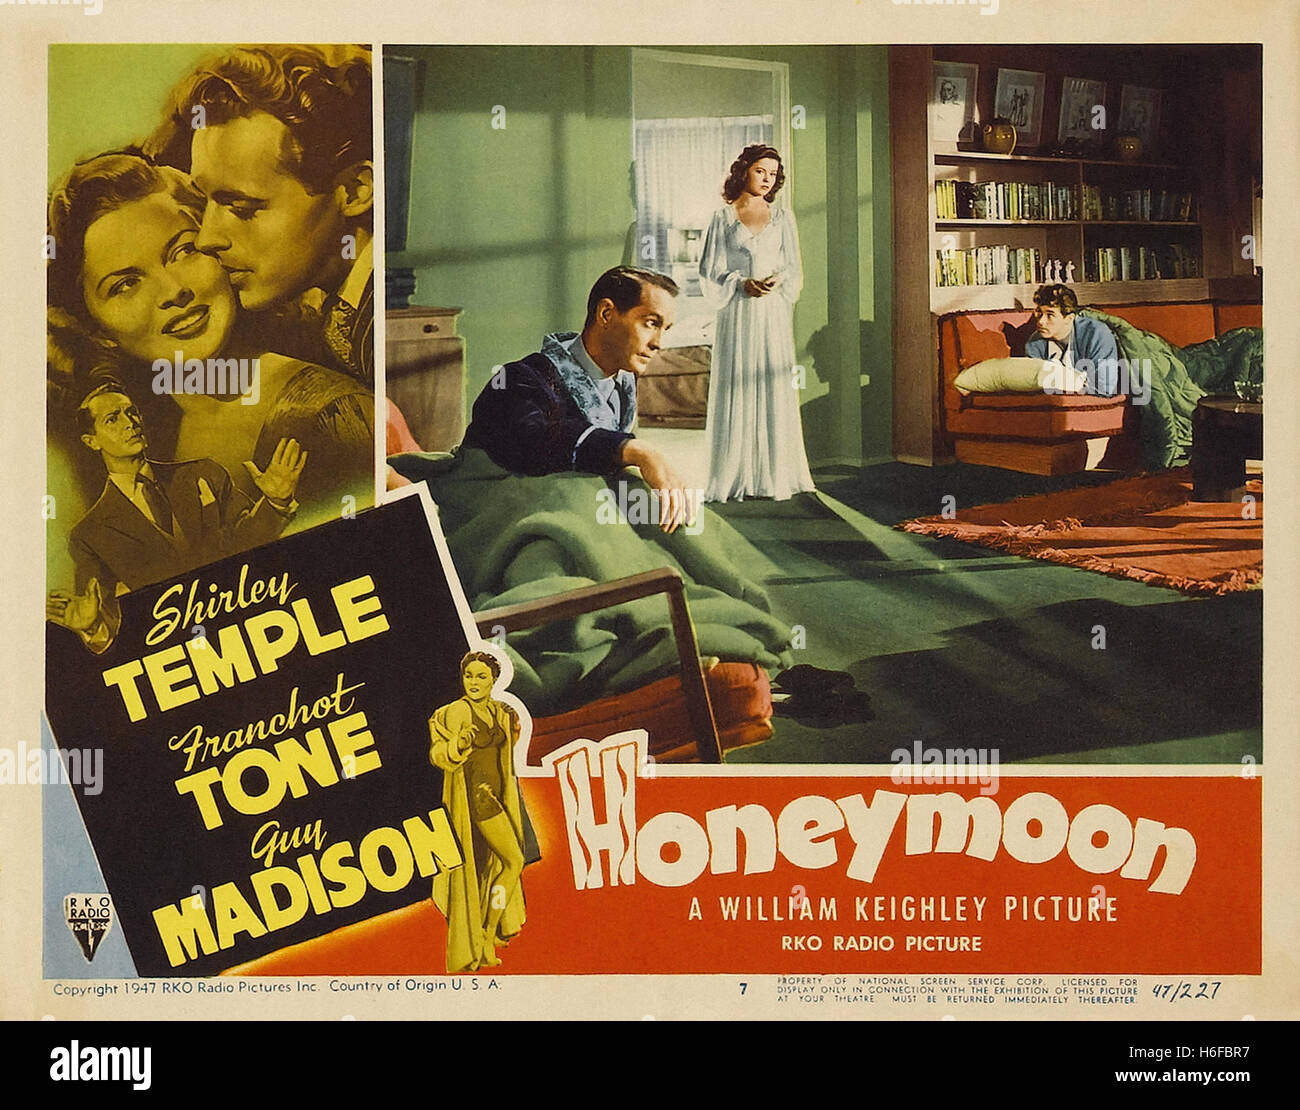 Luna de miel (1947) - Movie Poster - Foto de stock